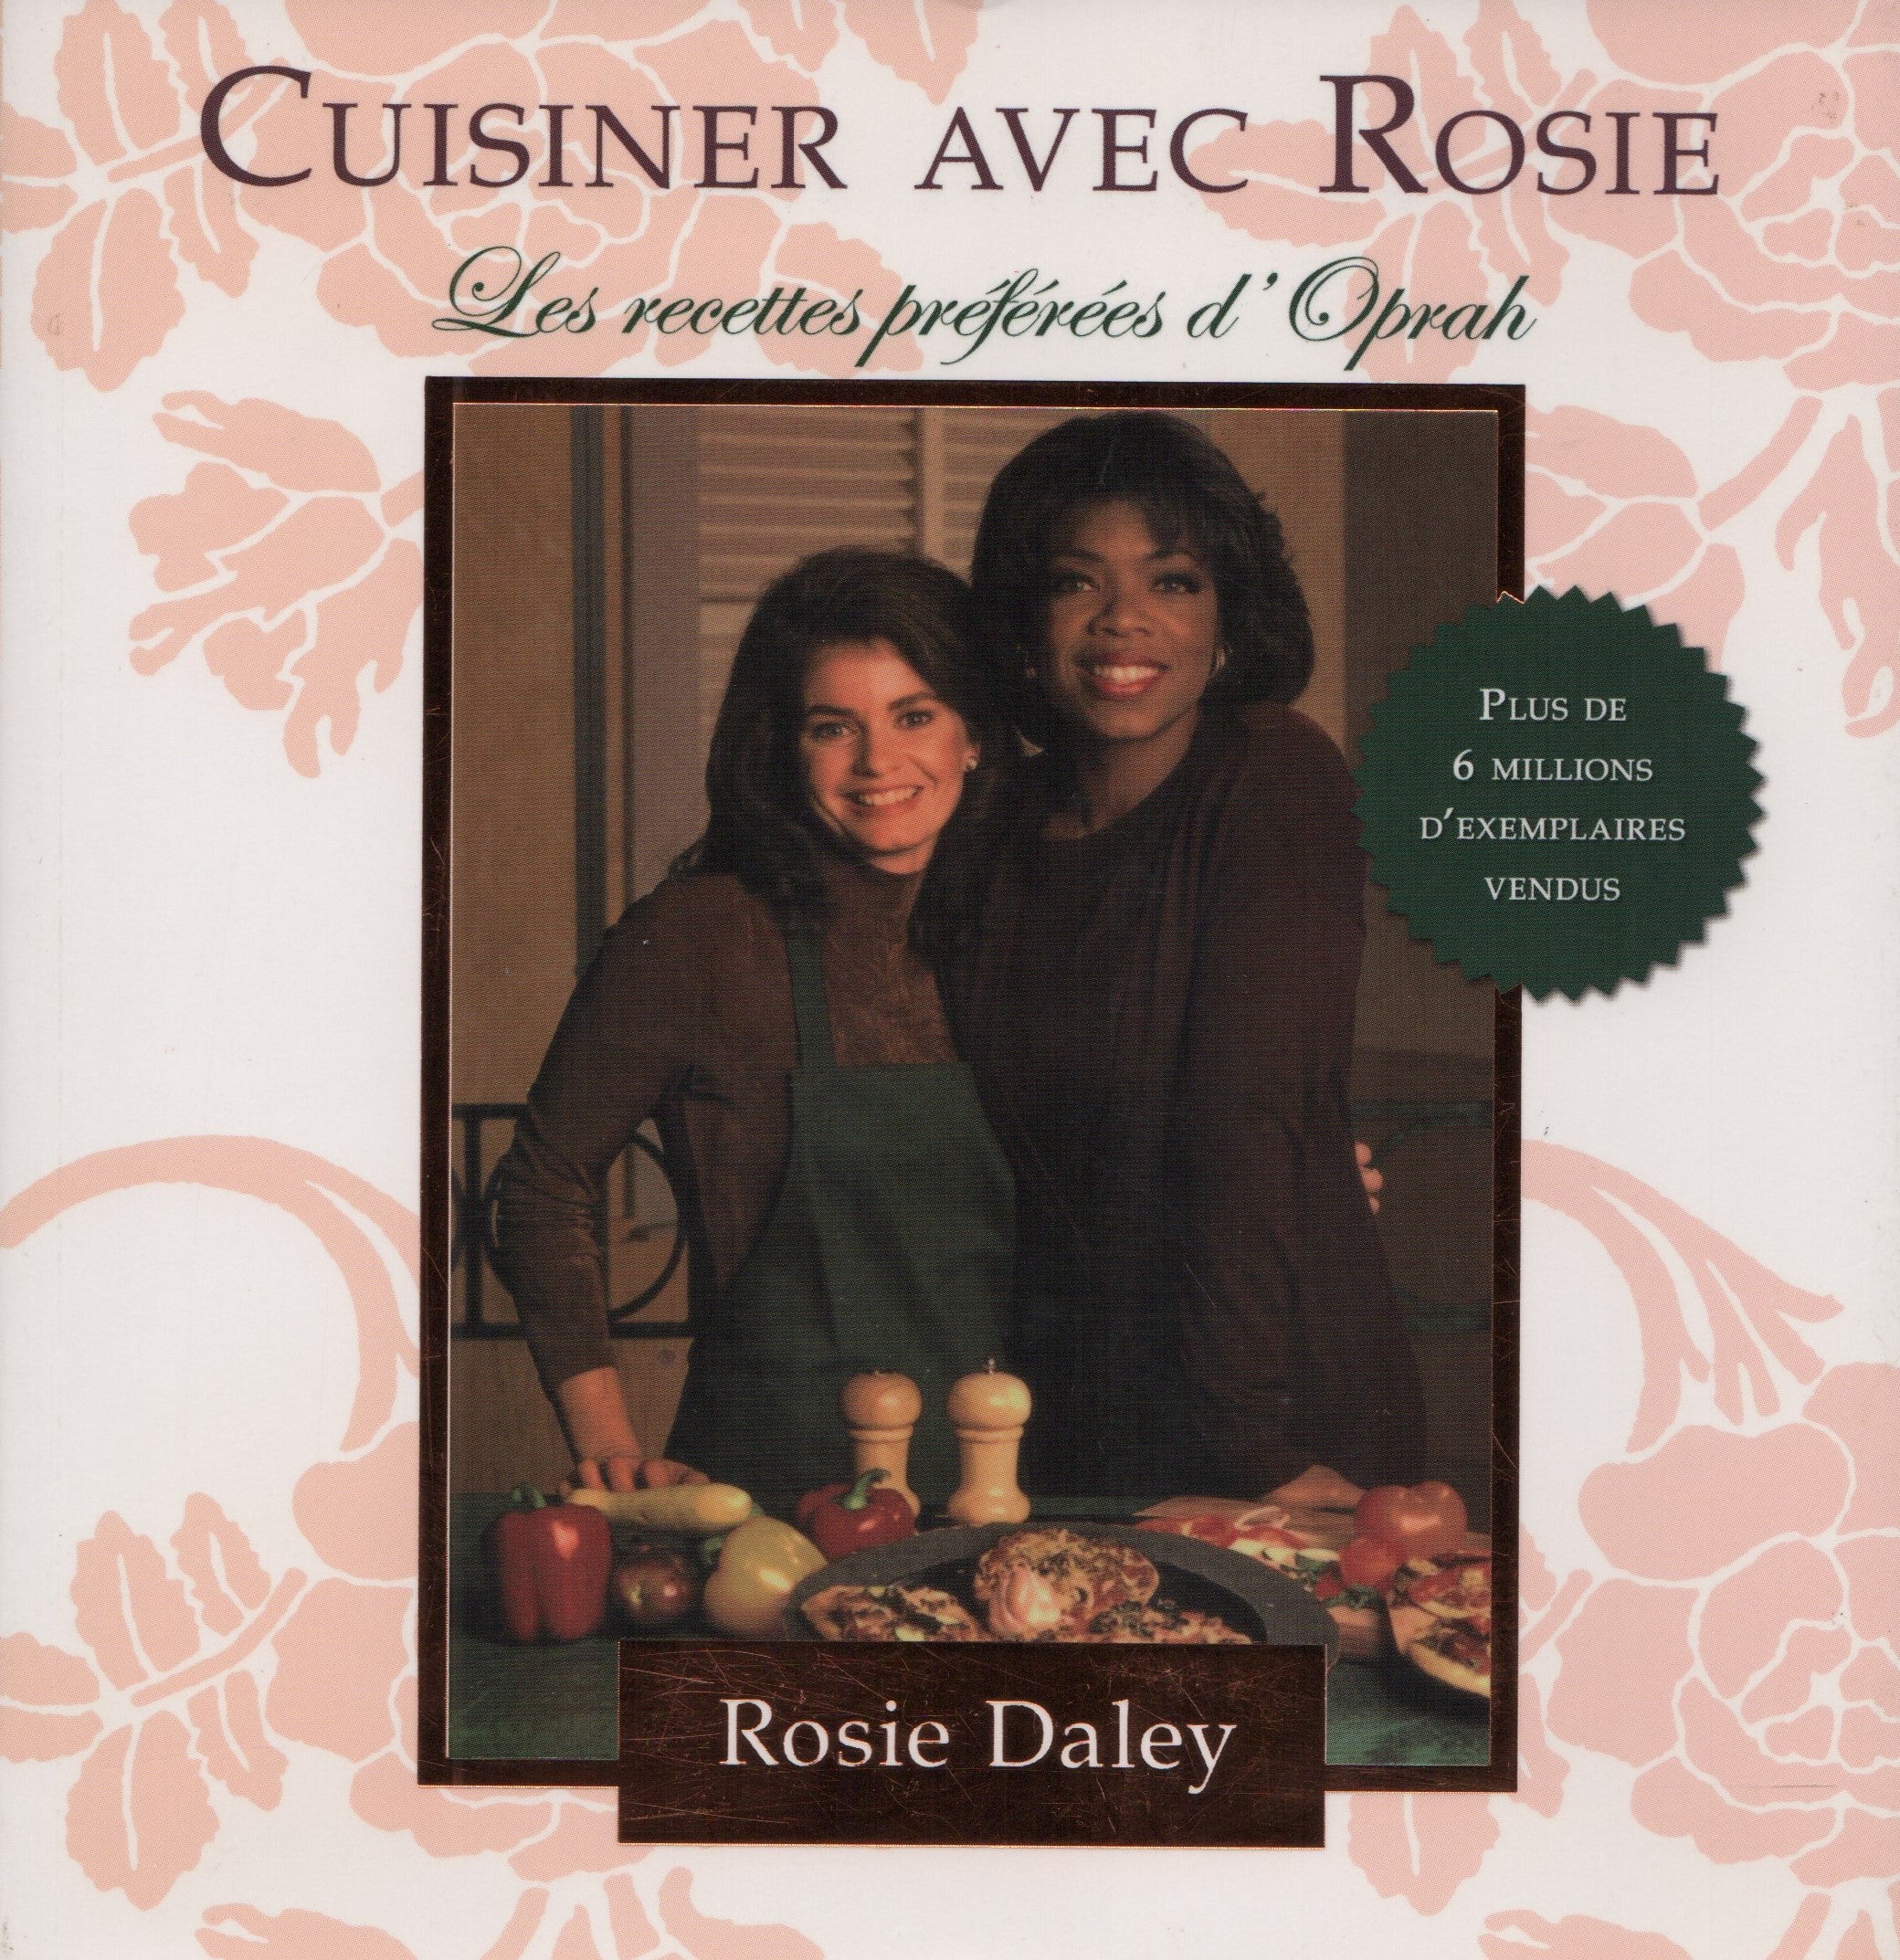 DALEY, ROSIE. Cuisiner avec Rosie : Les recettes préférées d'Oprah